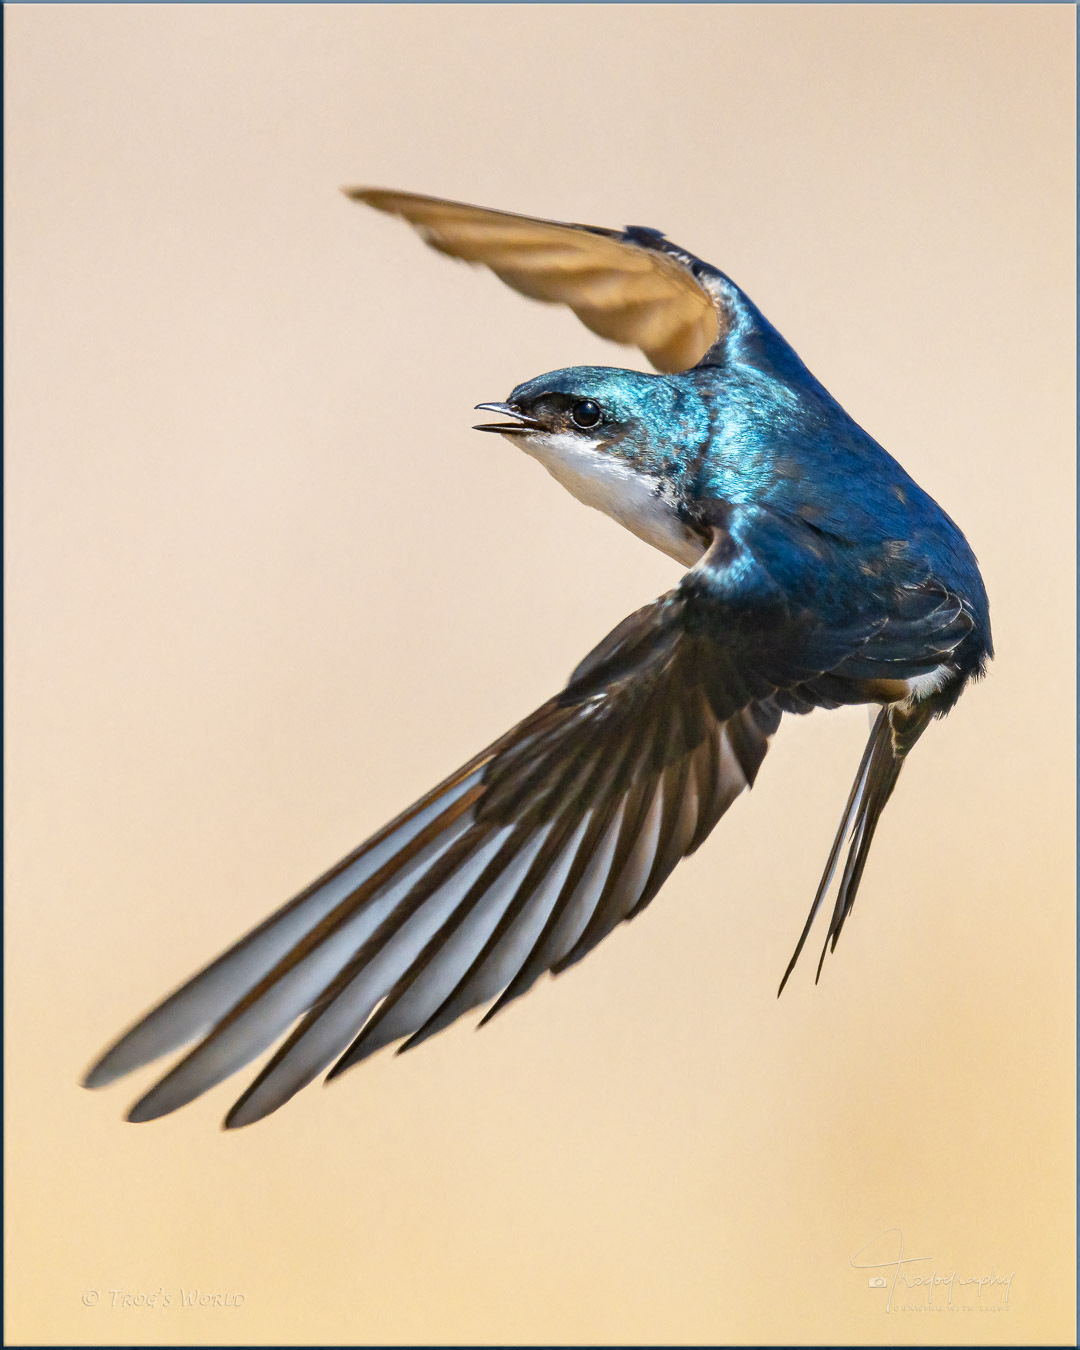 Tree Swallow in flight